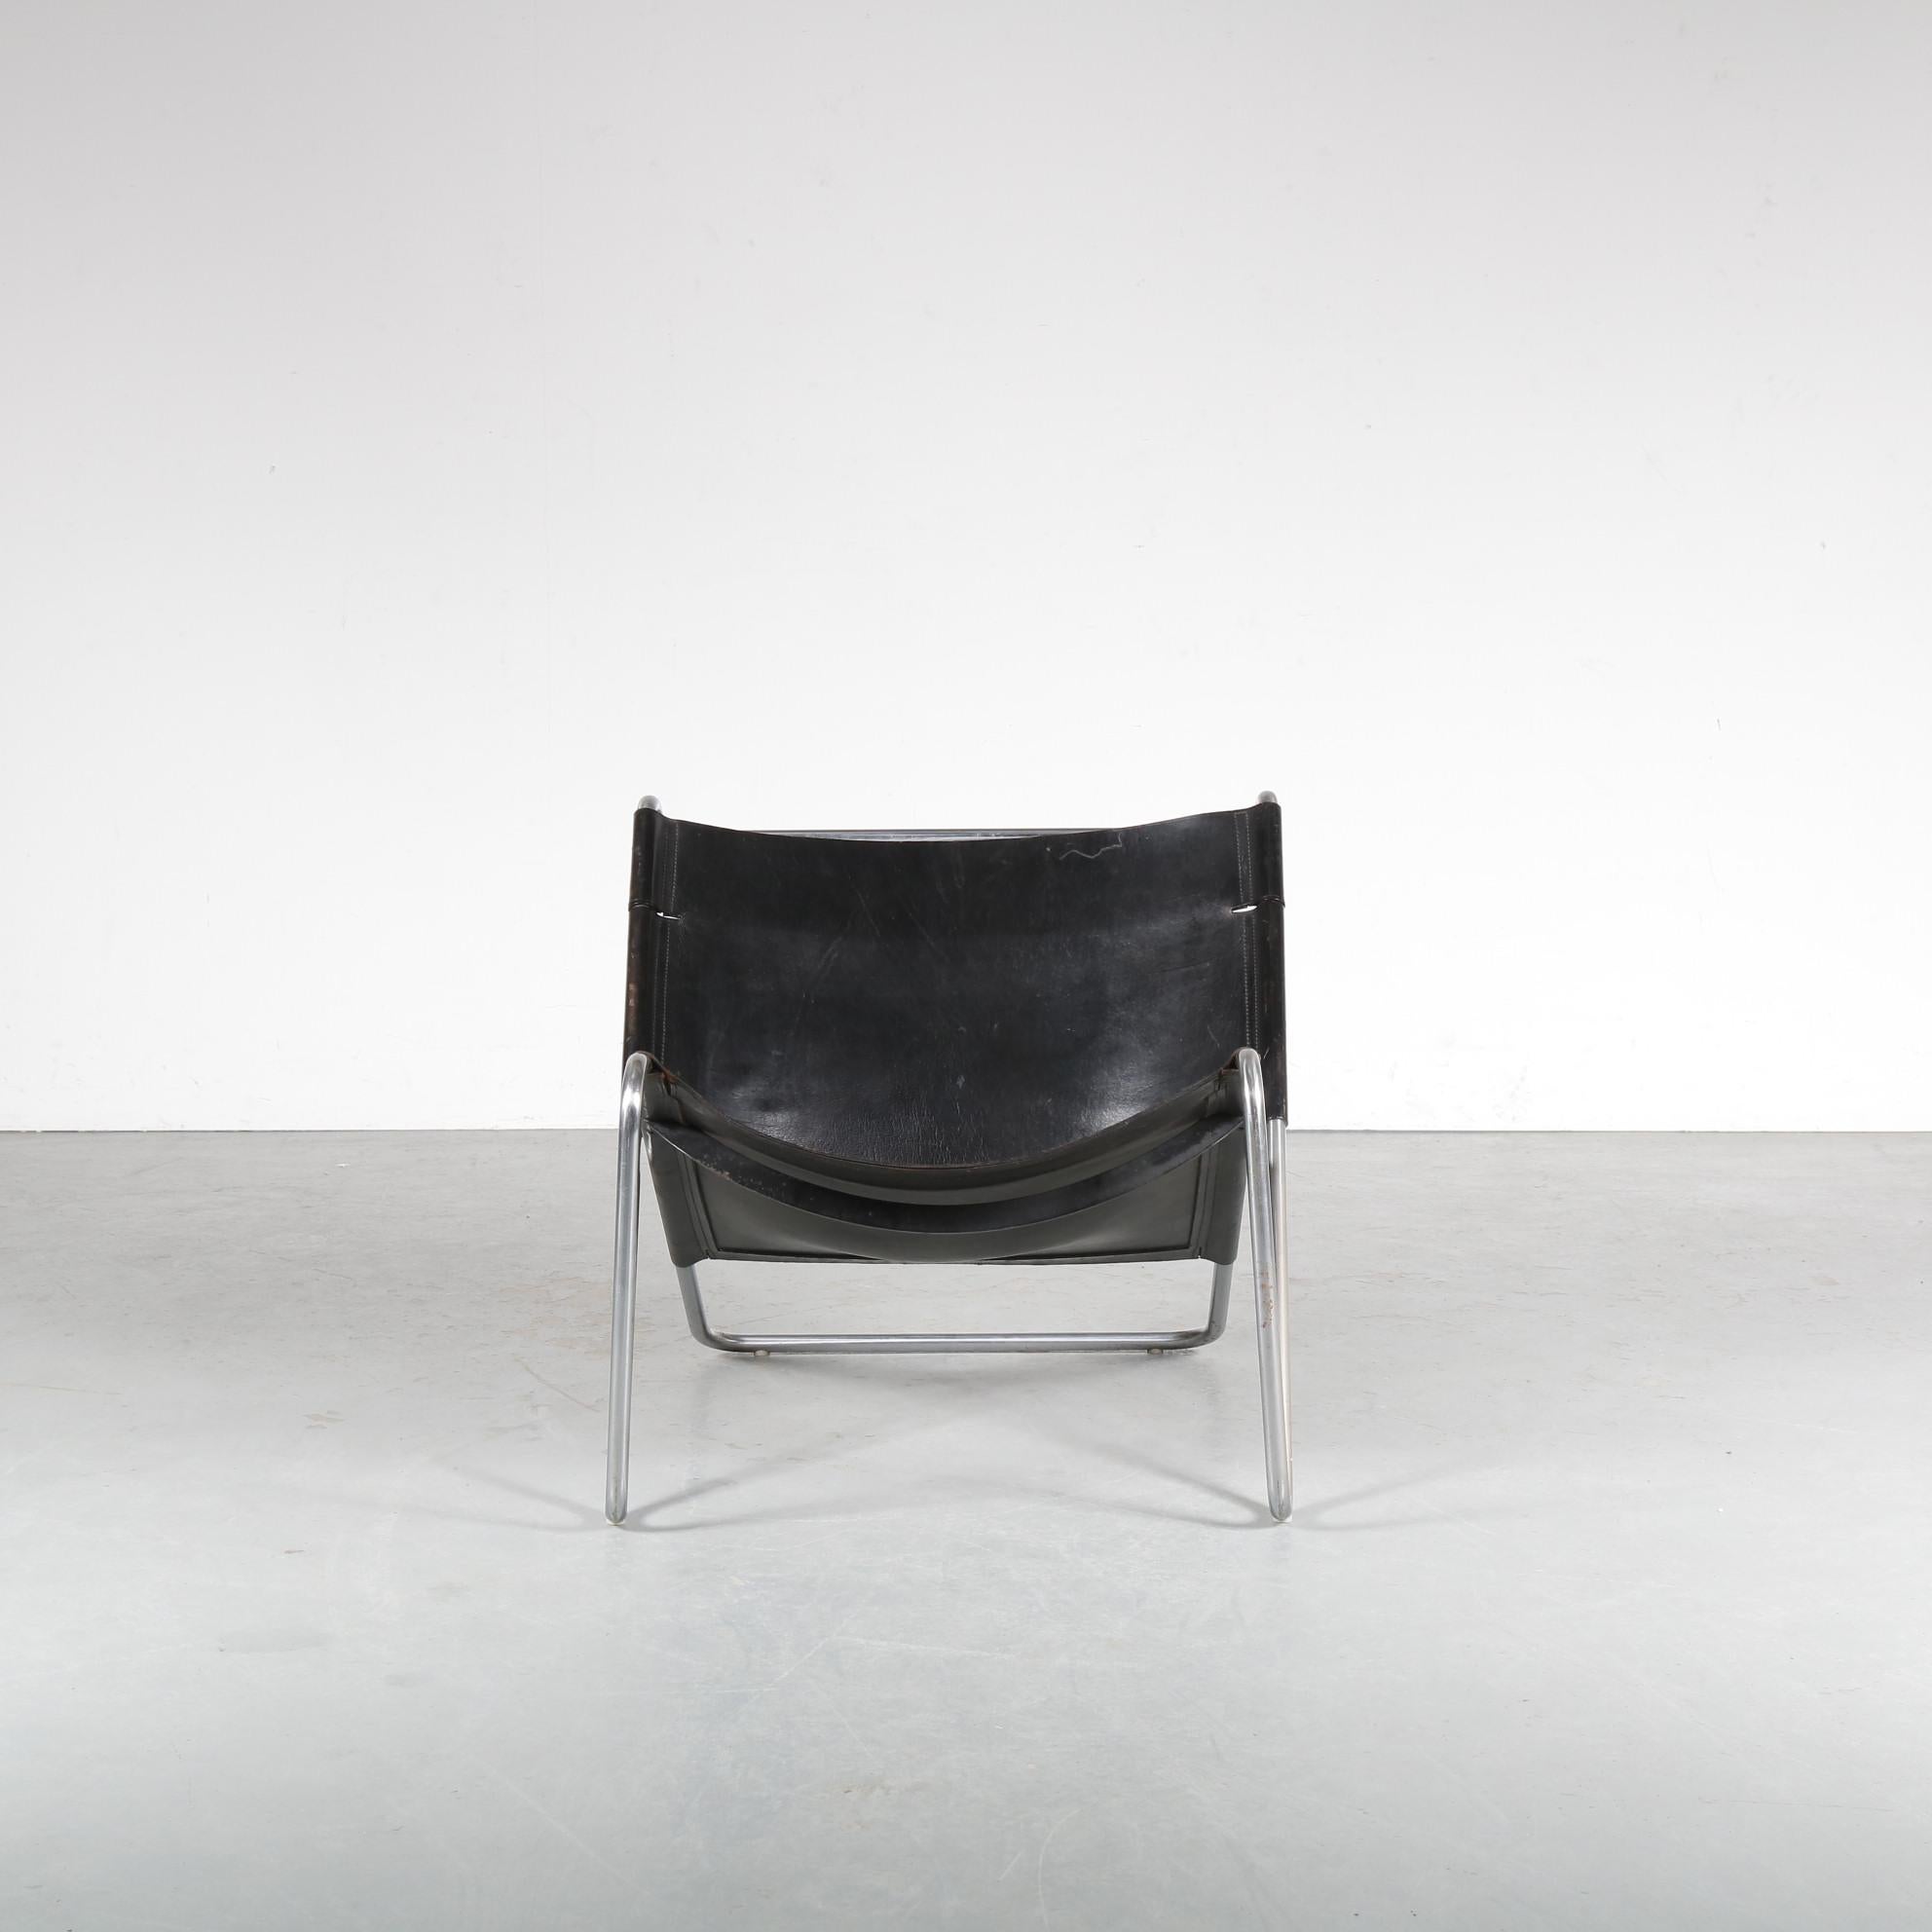 Une impressionnante chaise longue conçue par Kwok Hoi Chan, fabriquée par Spectrum aux Pays-Bas vers 1970.

Le meuble est doté d'un cadre tubulaire en métal chromé qui maintient le revêtement en cuir de cou noir. Ce cuir épais de qualité confère un